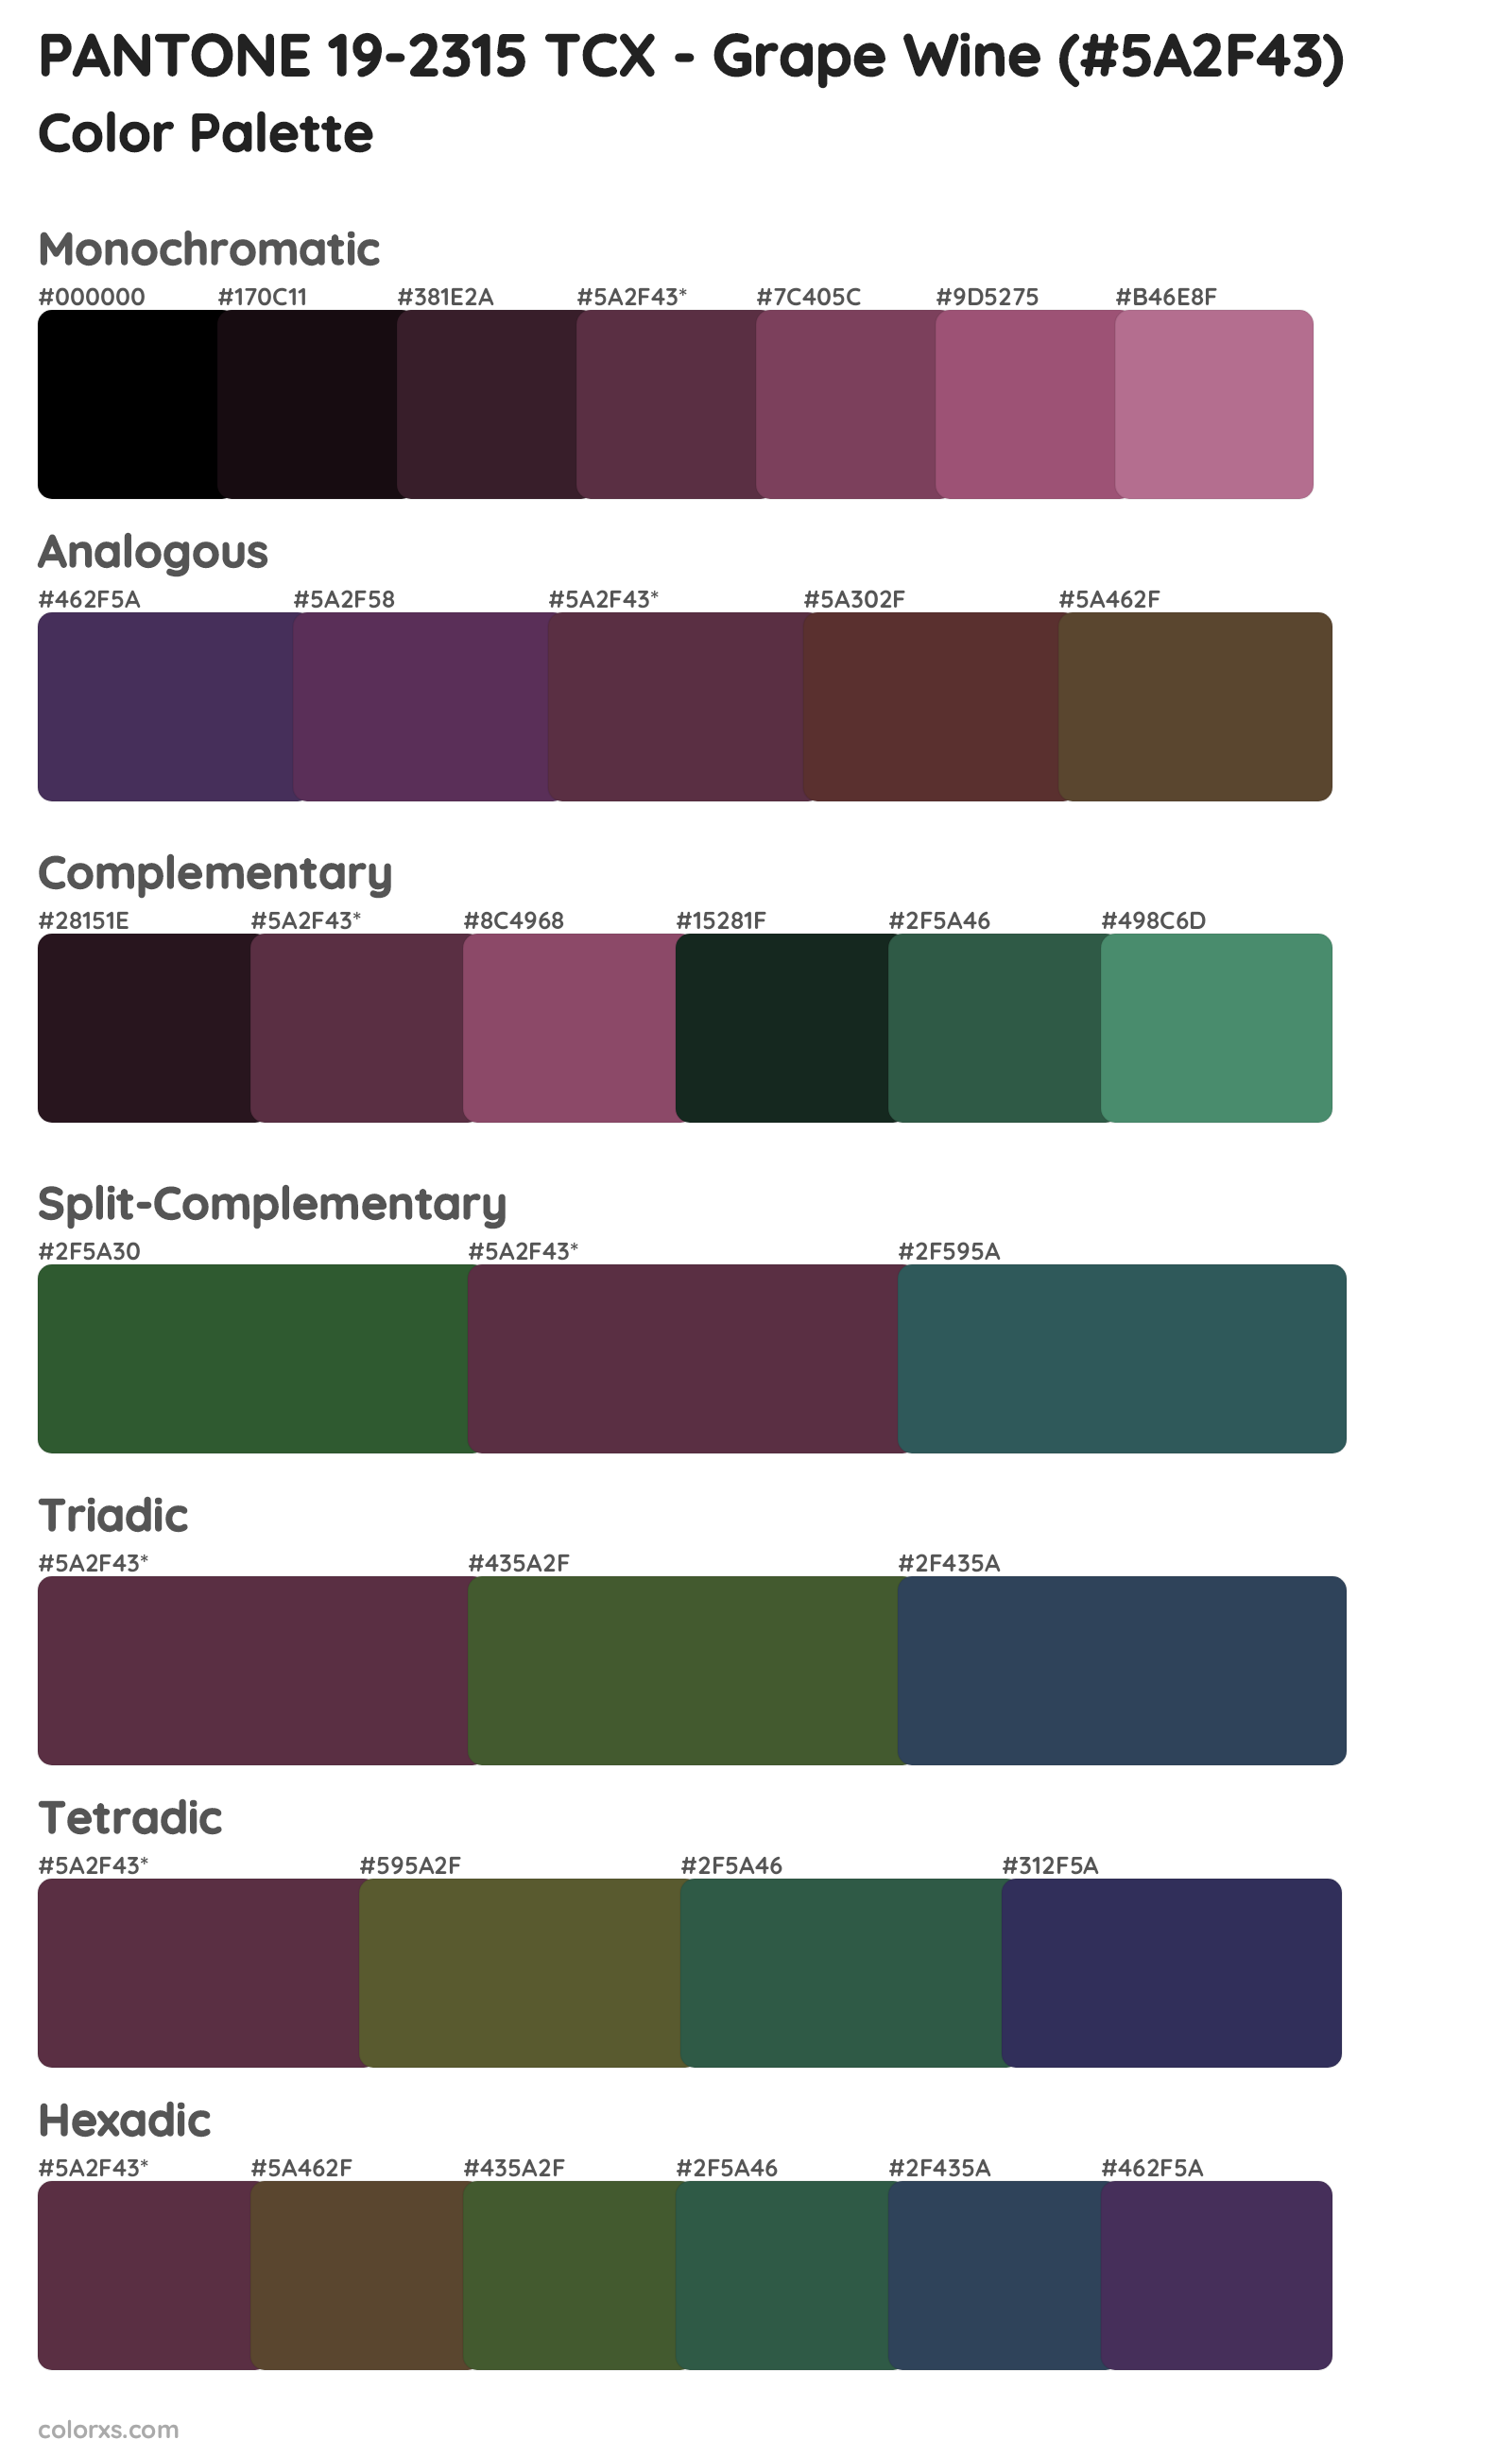 PANTONE 19-2315 TCX - Grape Wine Color Scheme Palettes